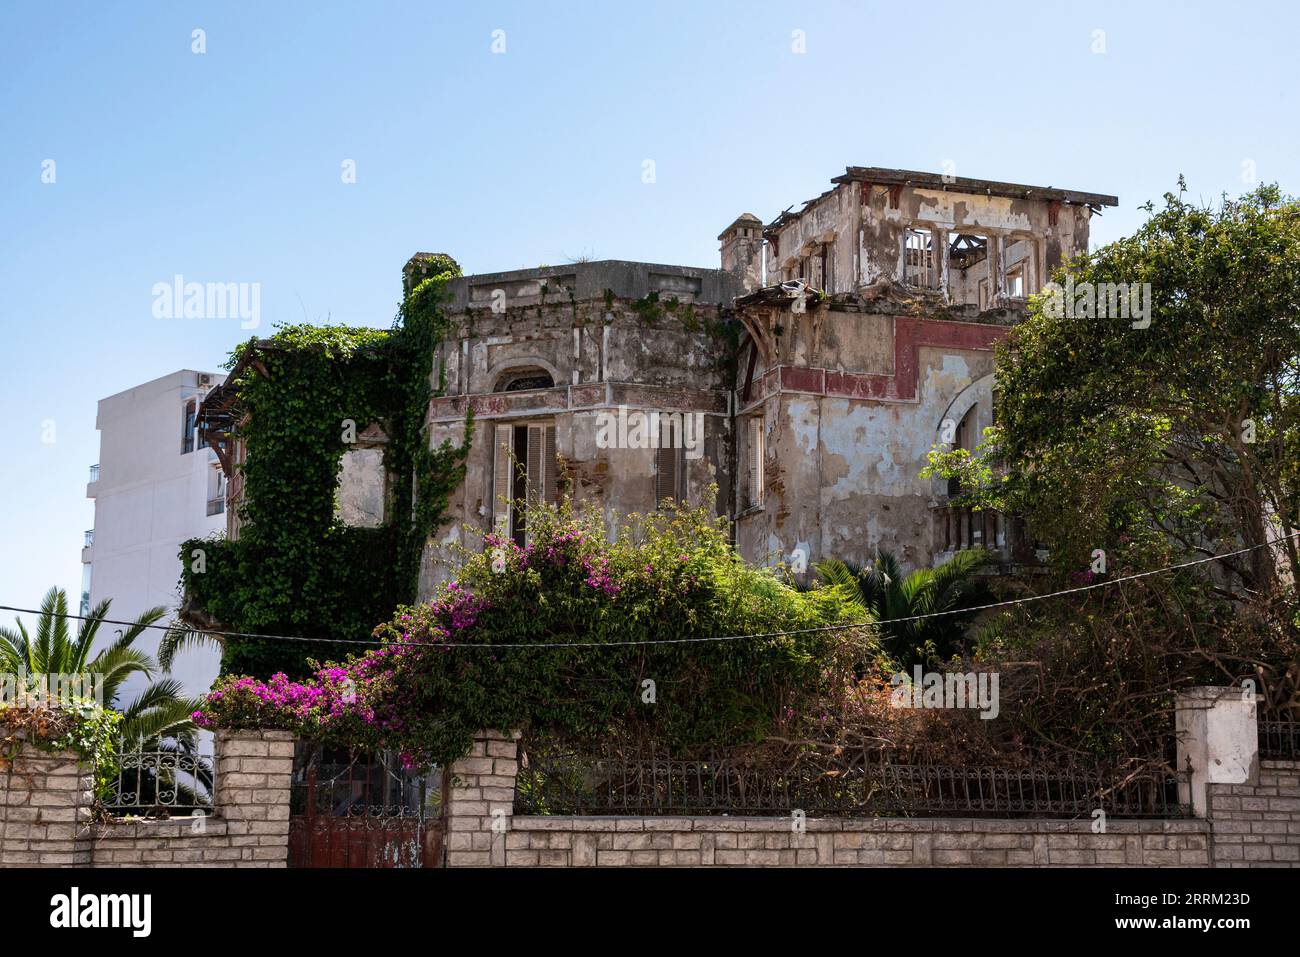 Ancienne villa abandonnée dans le riche quartier Marshan de Tanger, au Maroc Banque D'Images